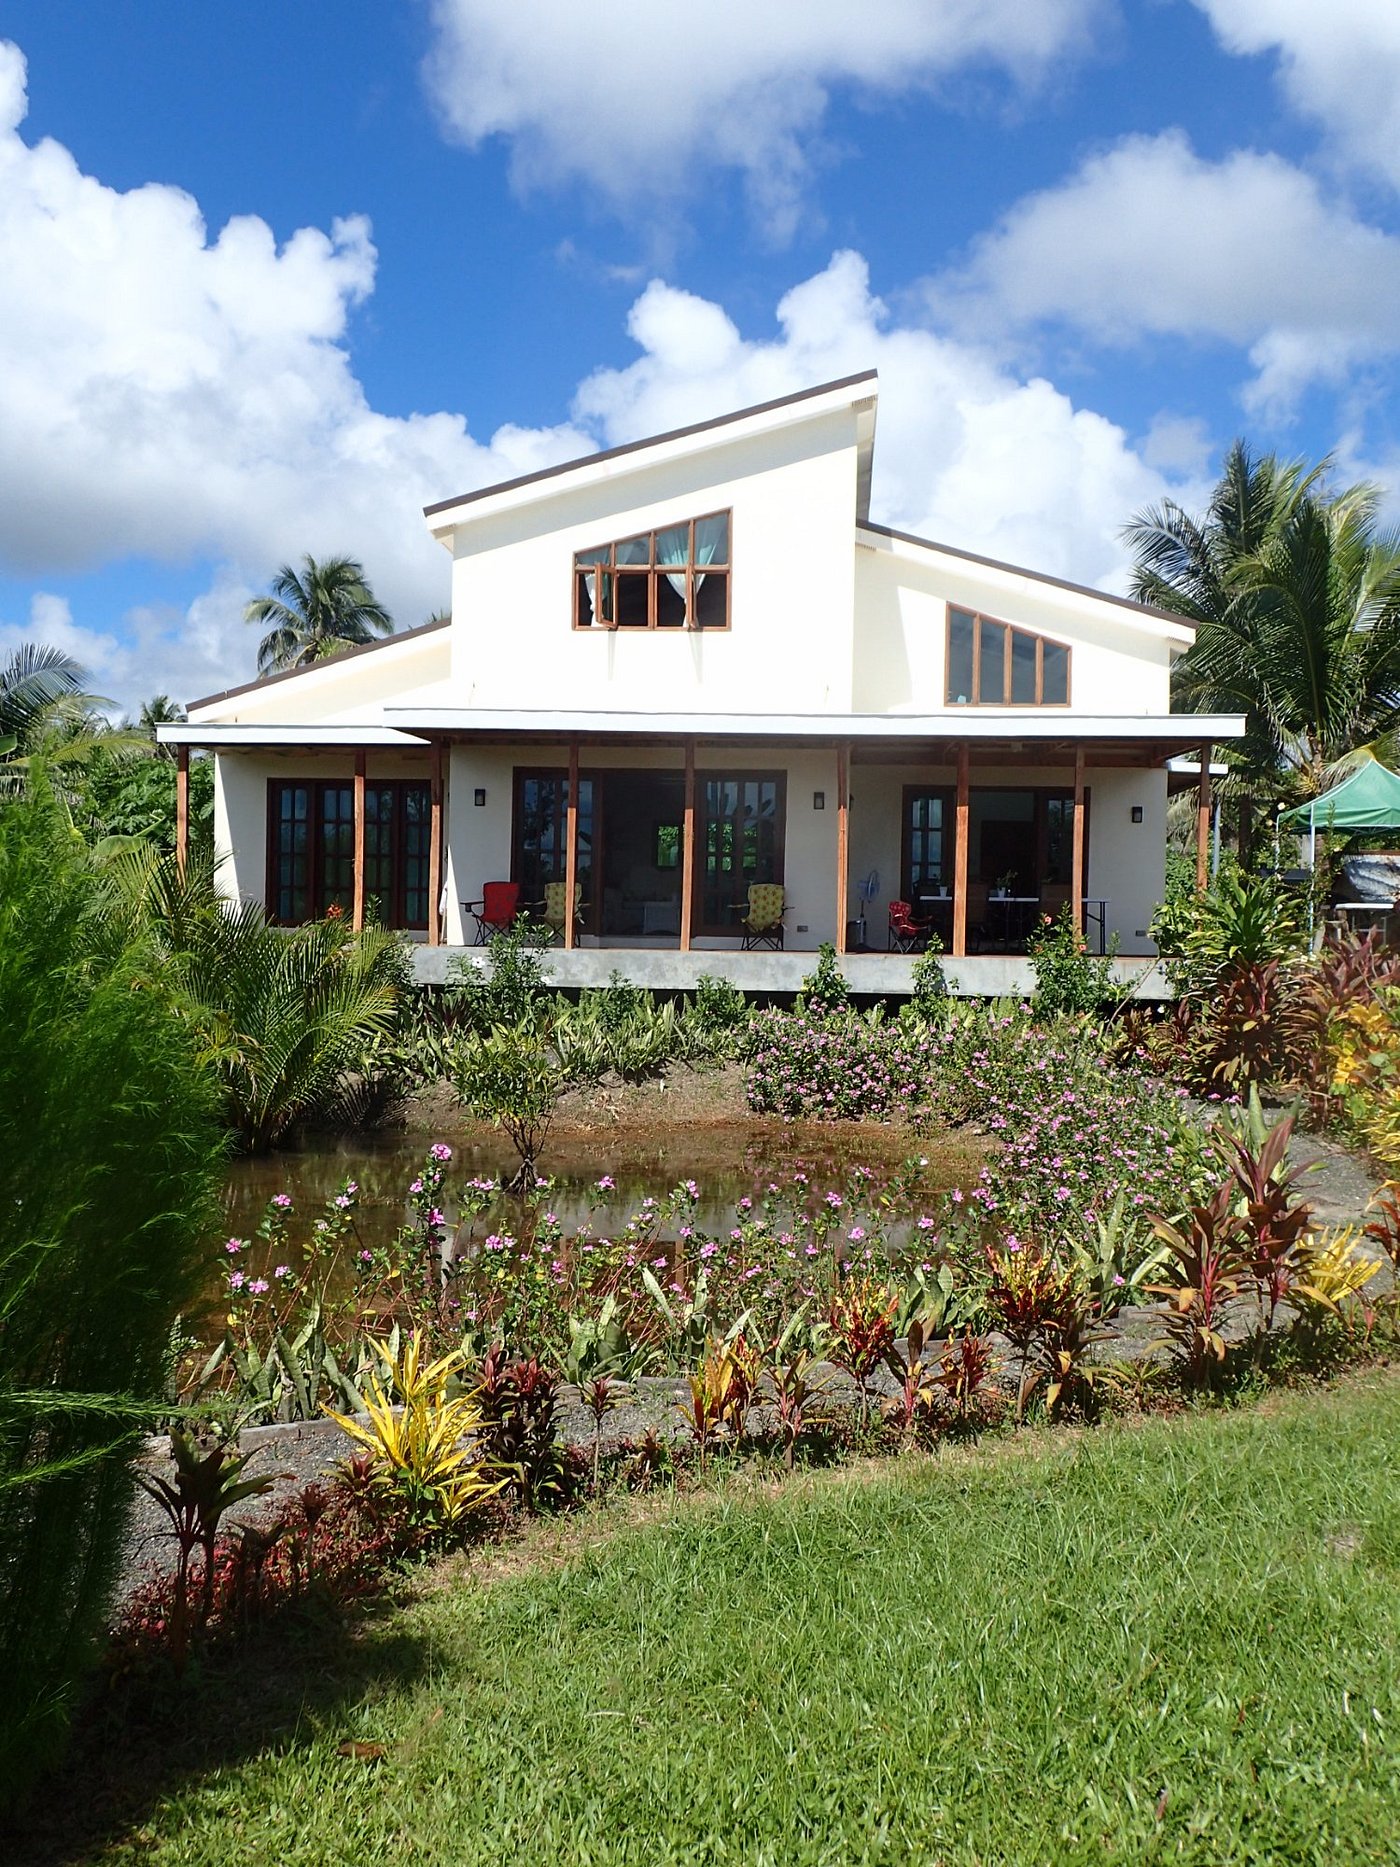 Kendi S Beach Garden Guest House Reviews Gubat Philippines